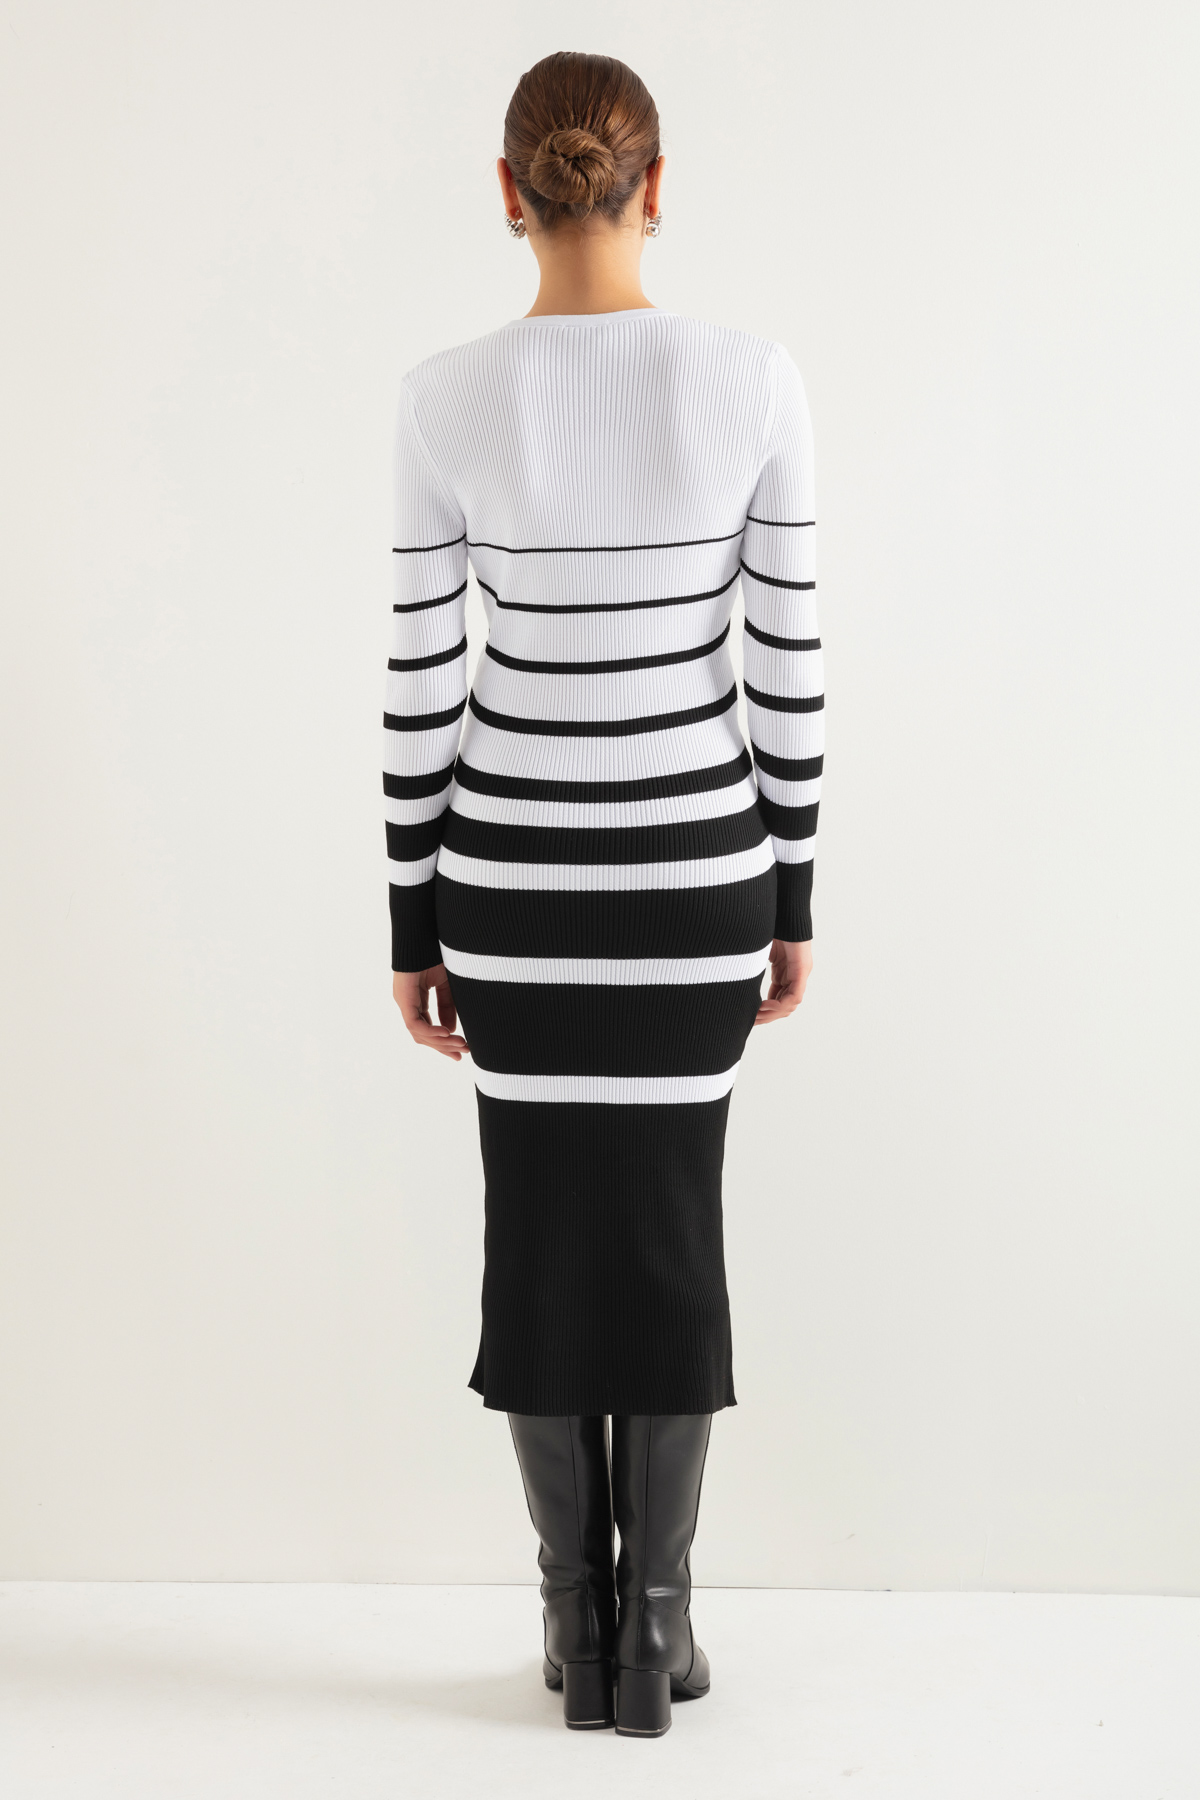 Women's Black Striped Knitwear Dress